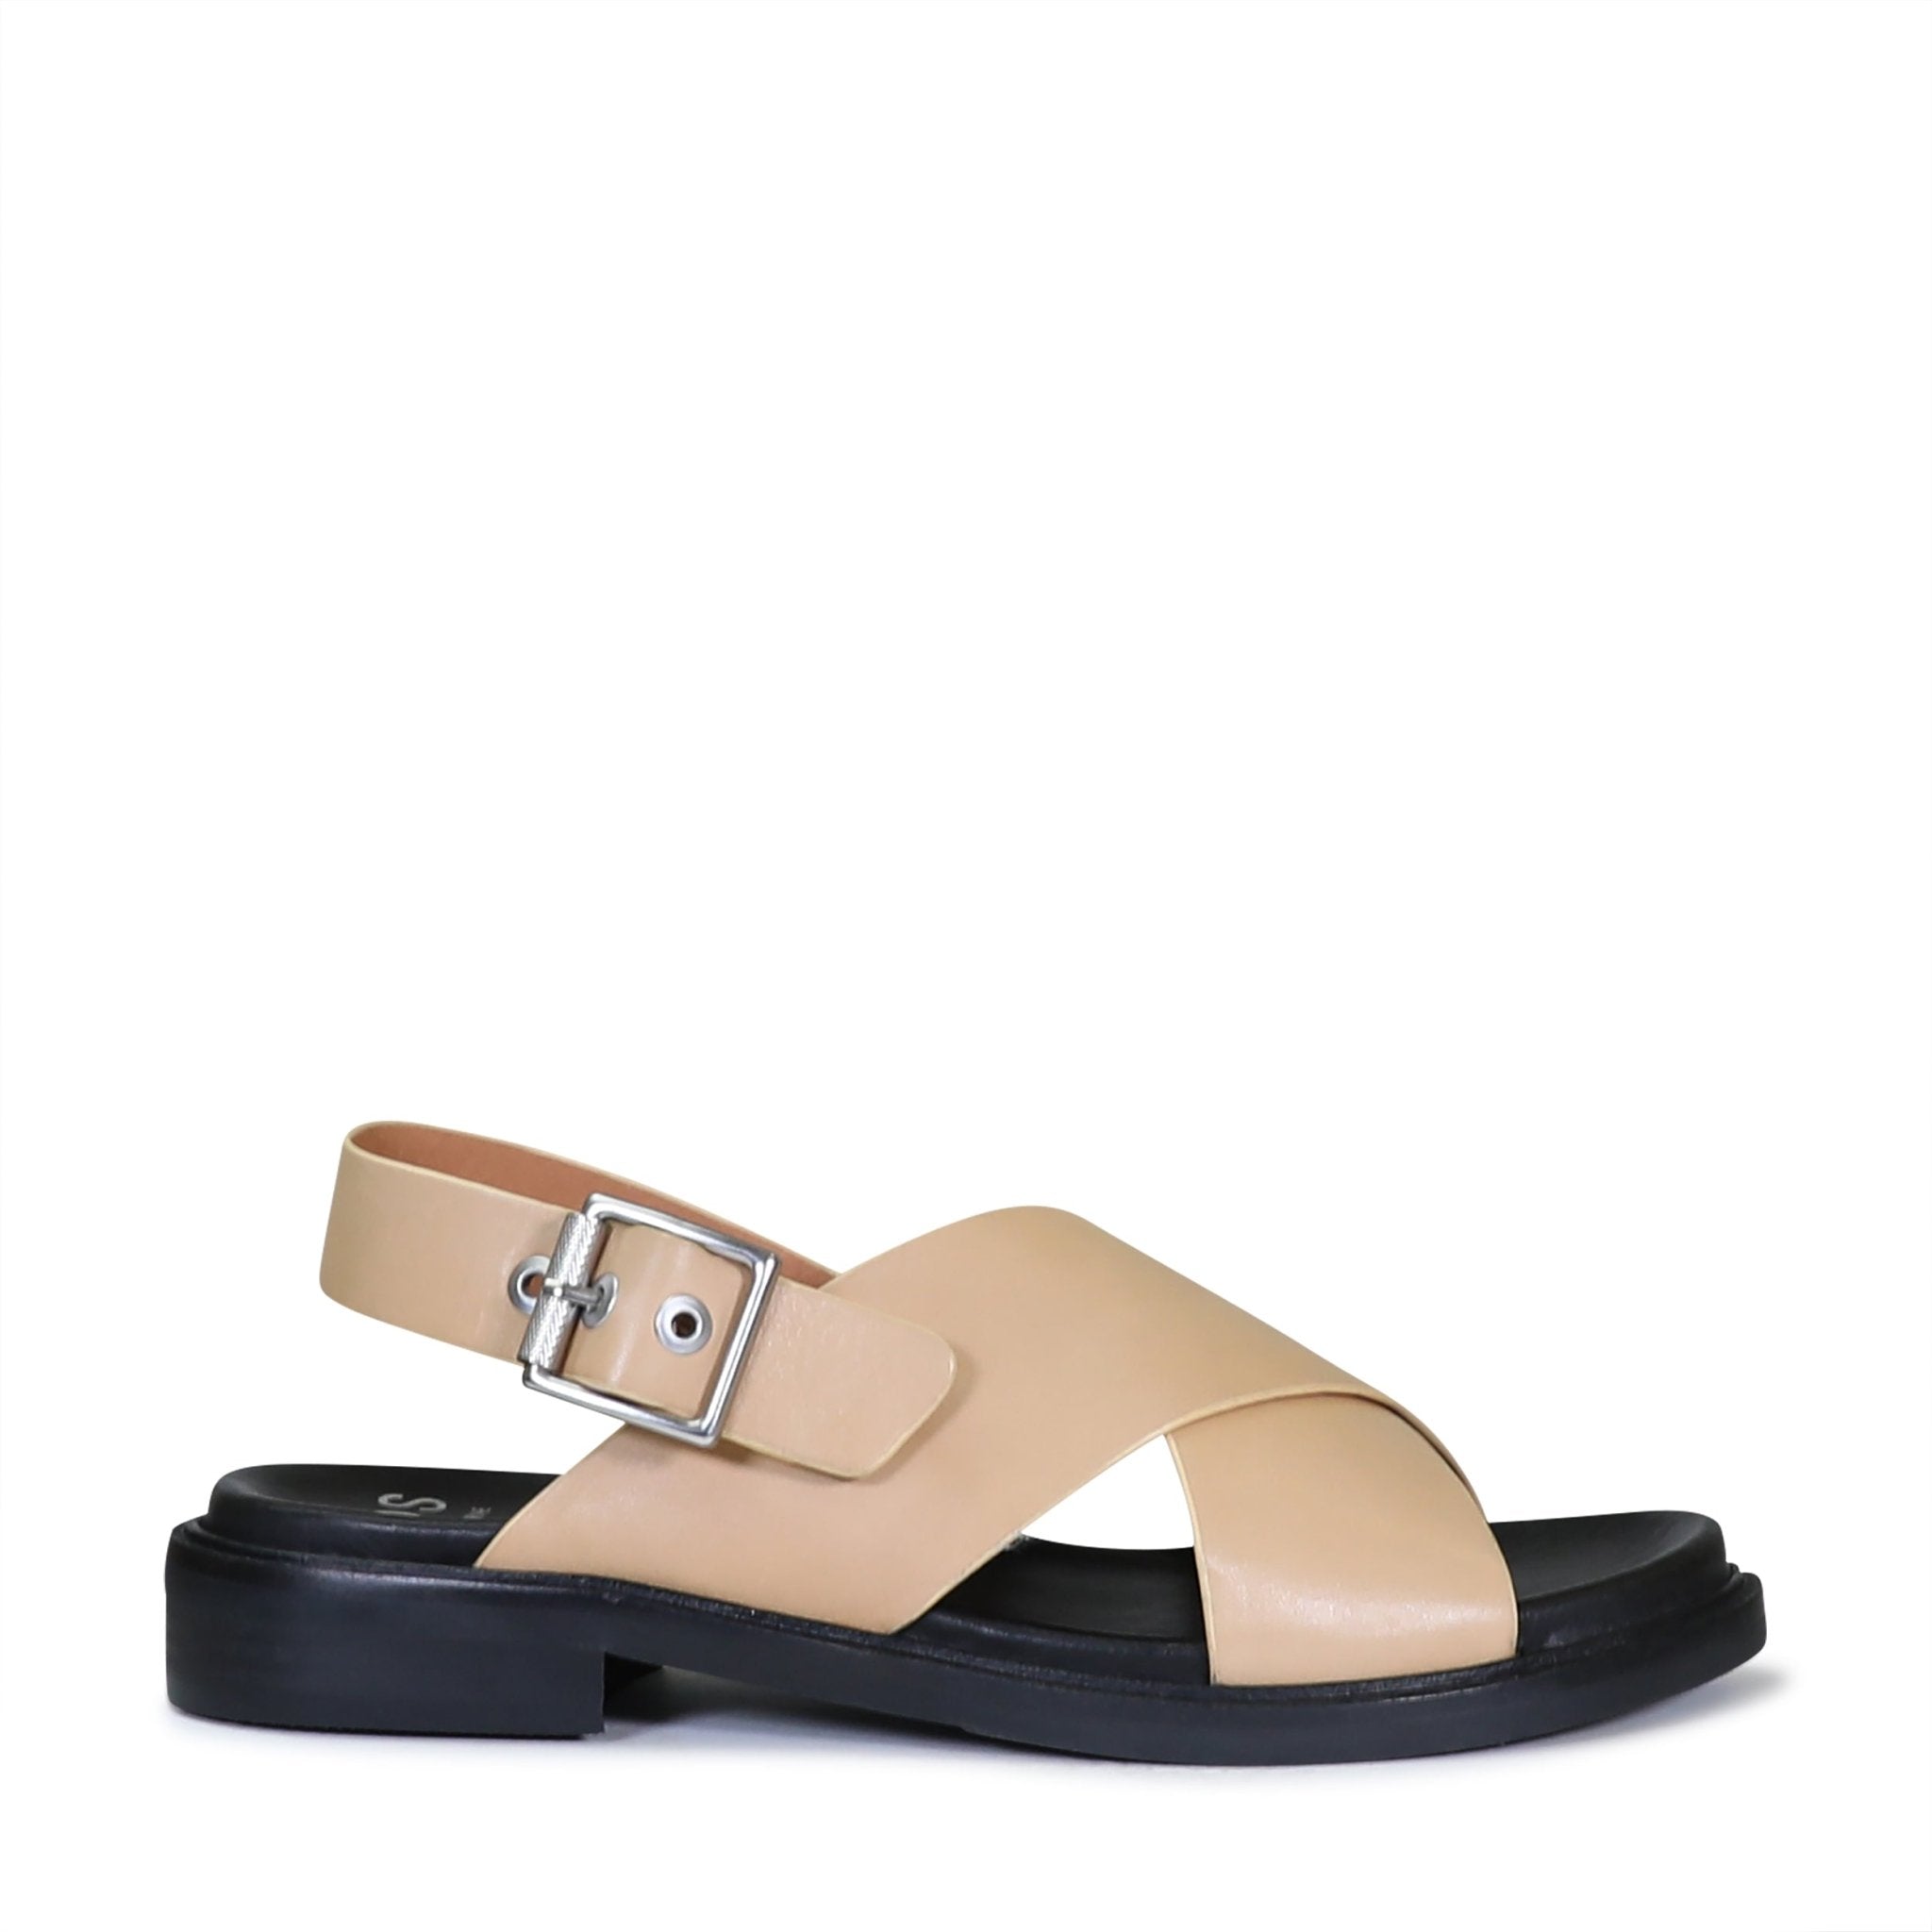 GRUNGE - EOS Footwear - Sling Back Sandals #color_tan